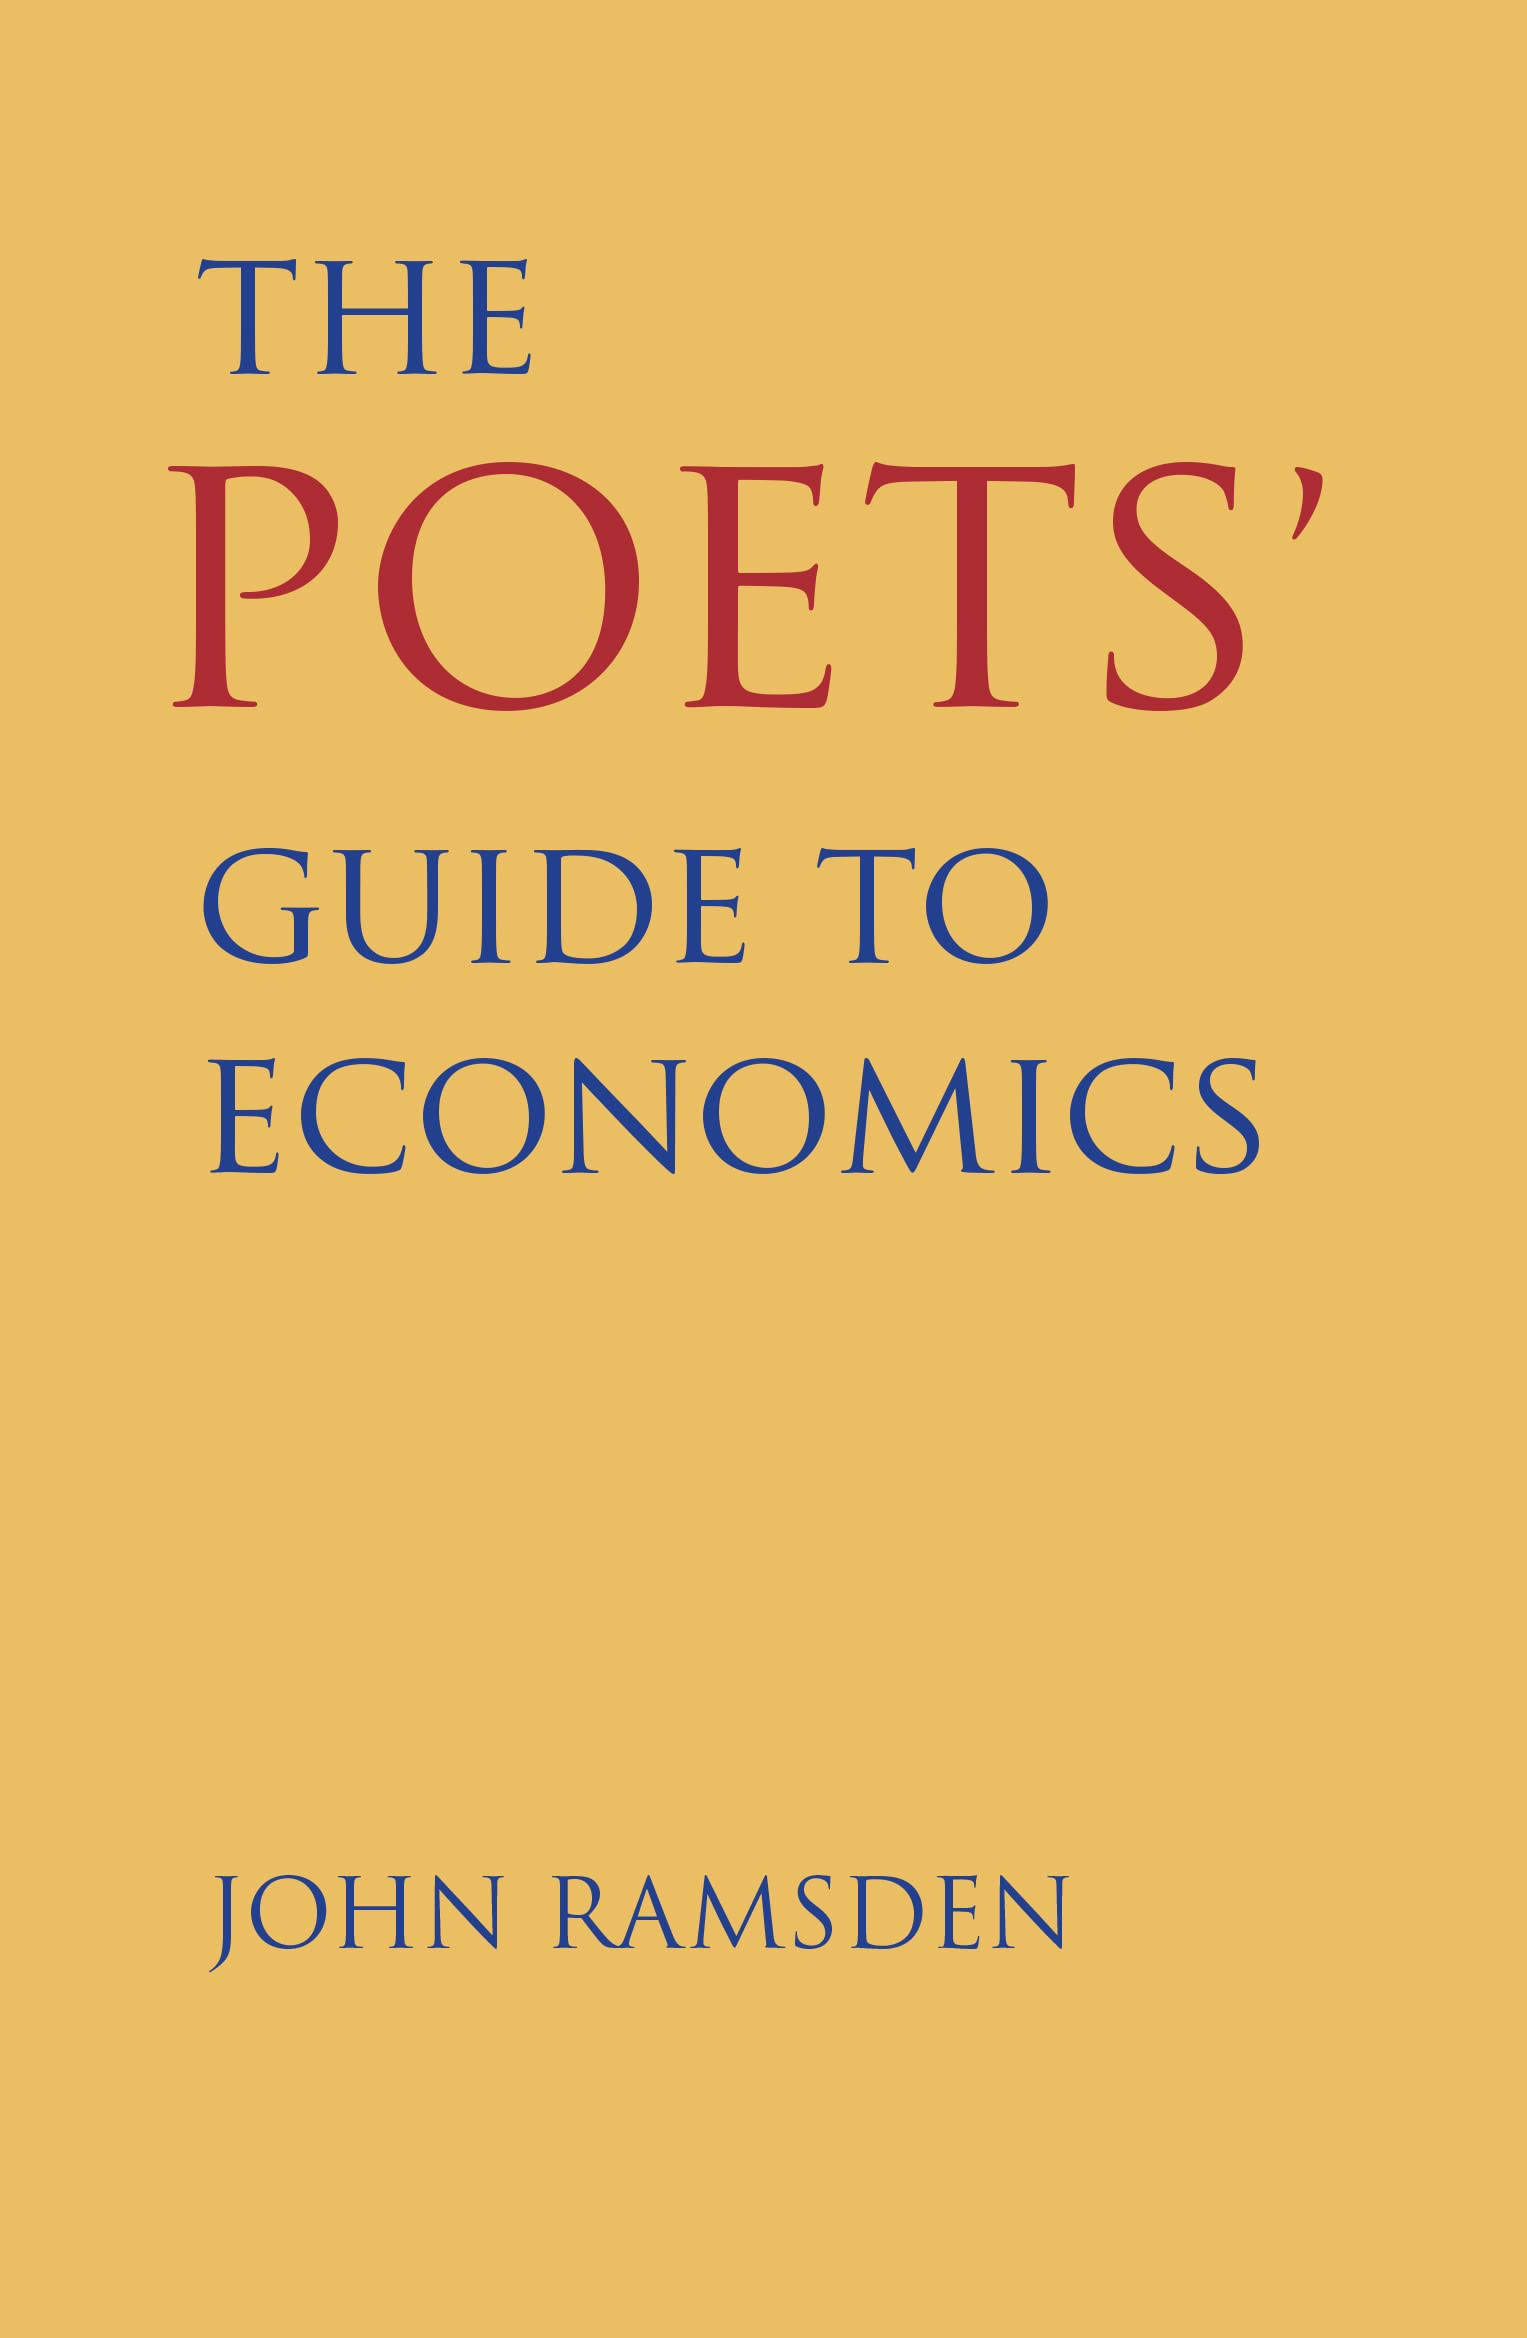 Poet's Guide to Economics [Book]